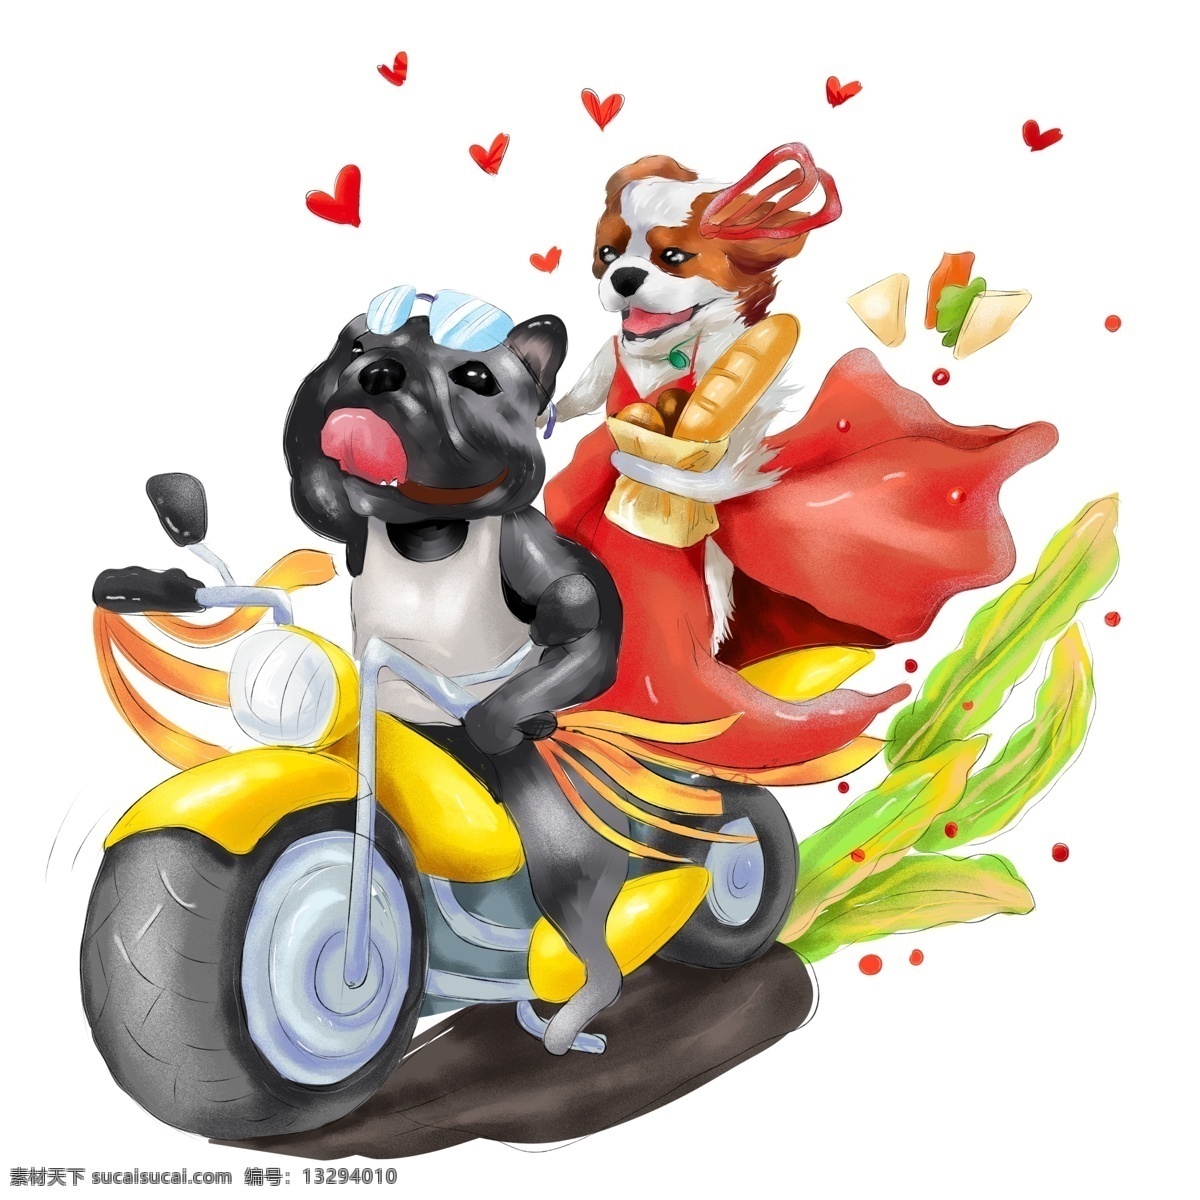 商用 手绘 谈恋爱 狗 动物 爱情 光棍 节 摩托 光棍节 海报素材 插画 恋爱 谈恋爱的狗 摩托车 交通工具 元素 斗牛犬